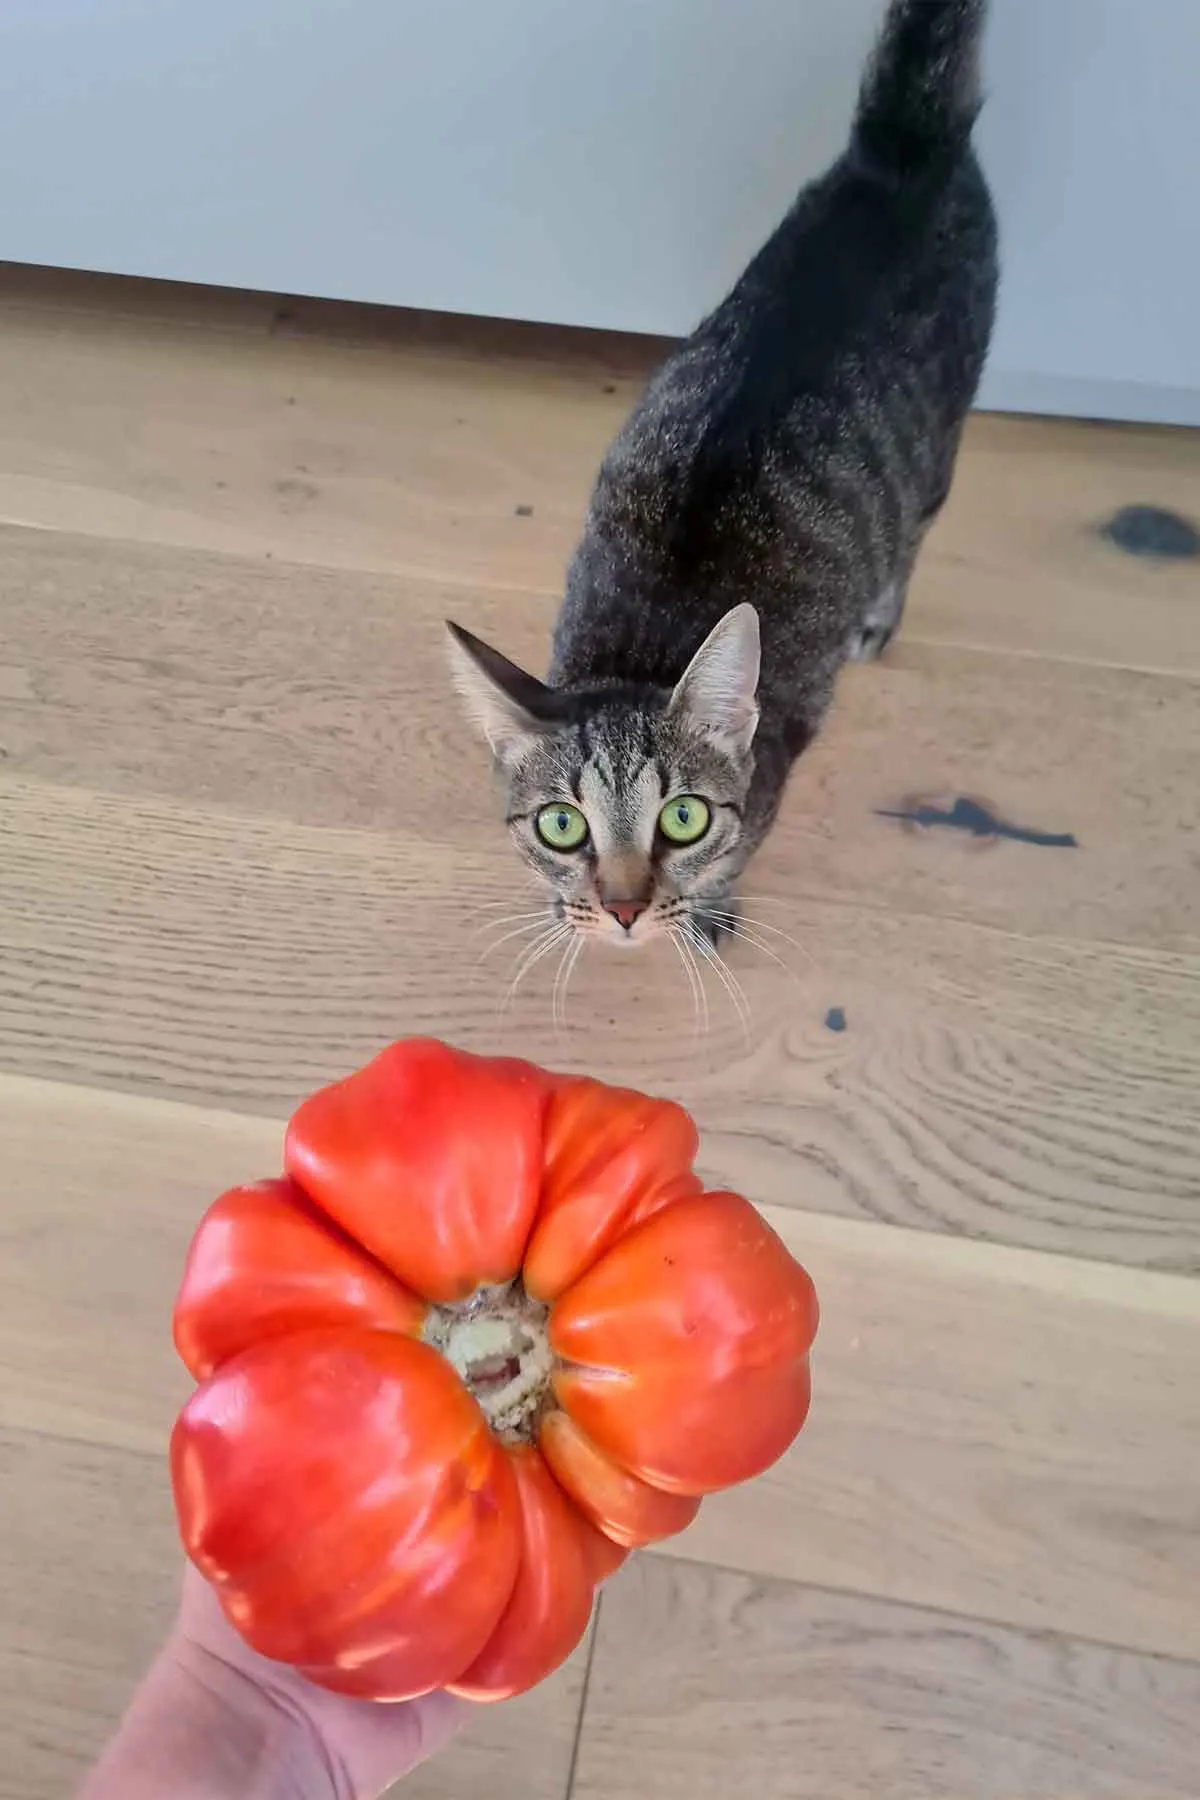 my biggest tomato this year